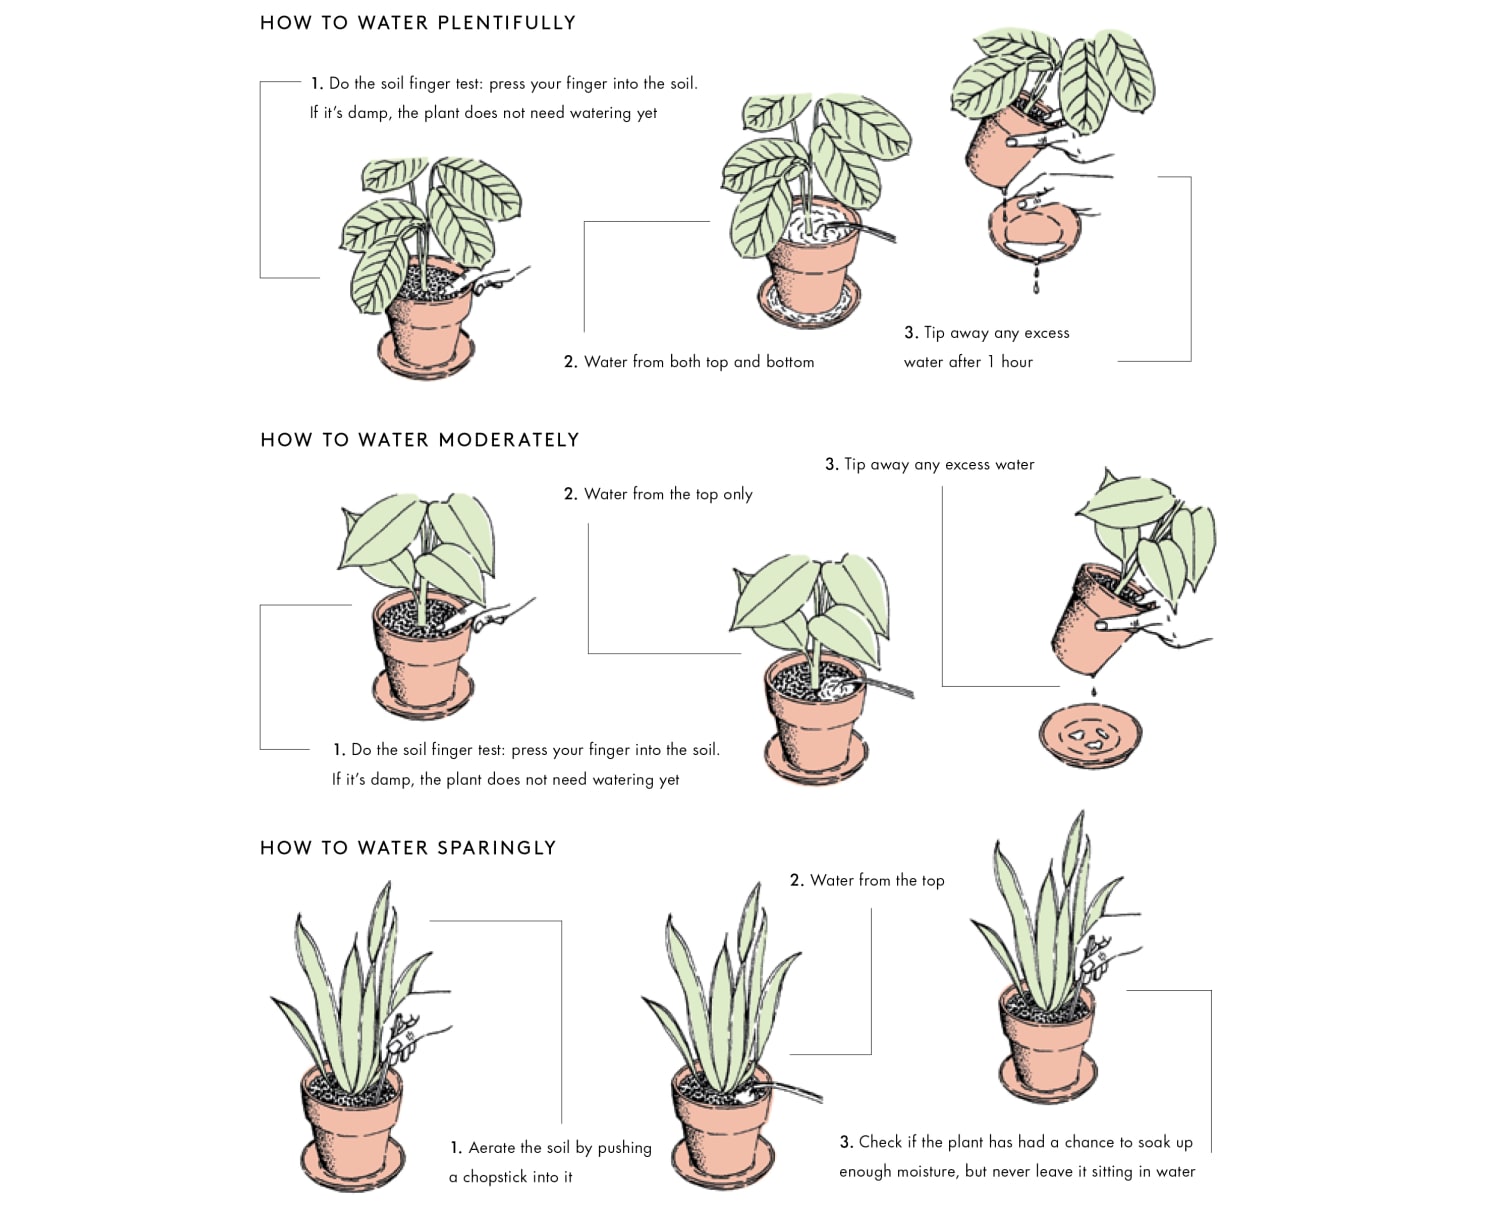 Graf péče o rostliny